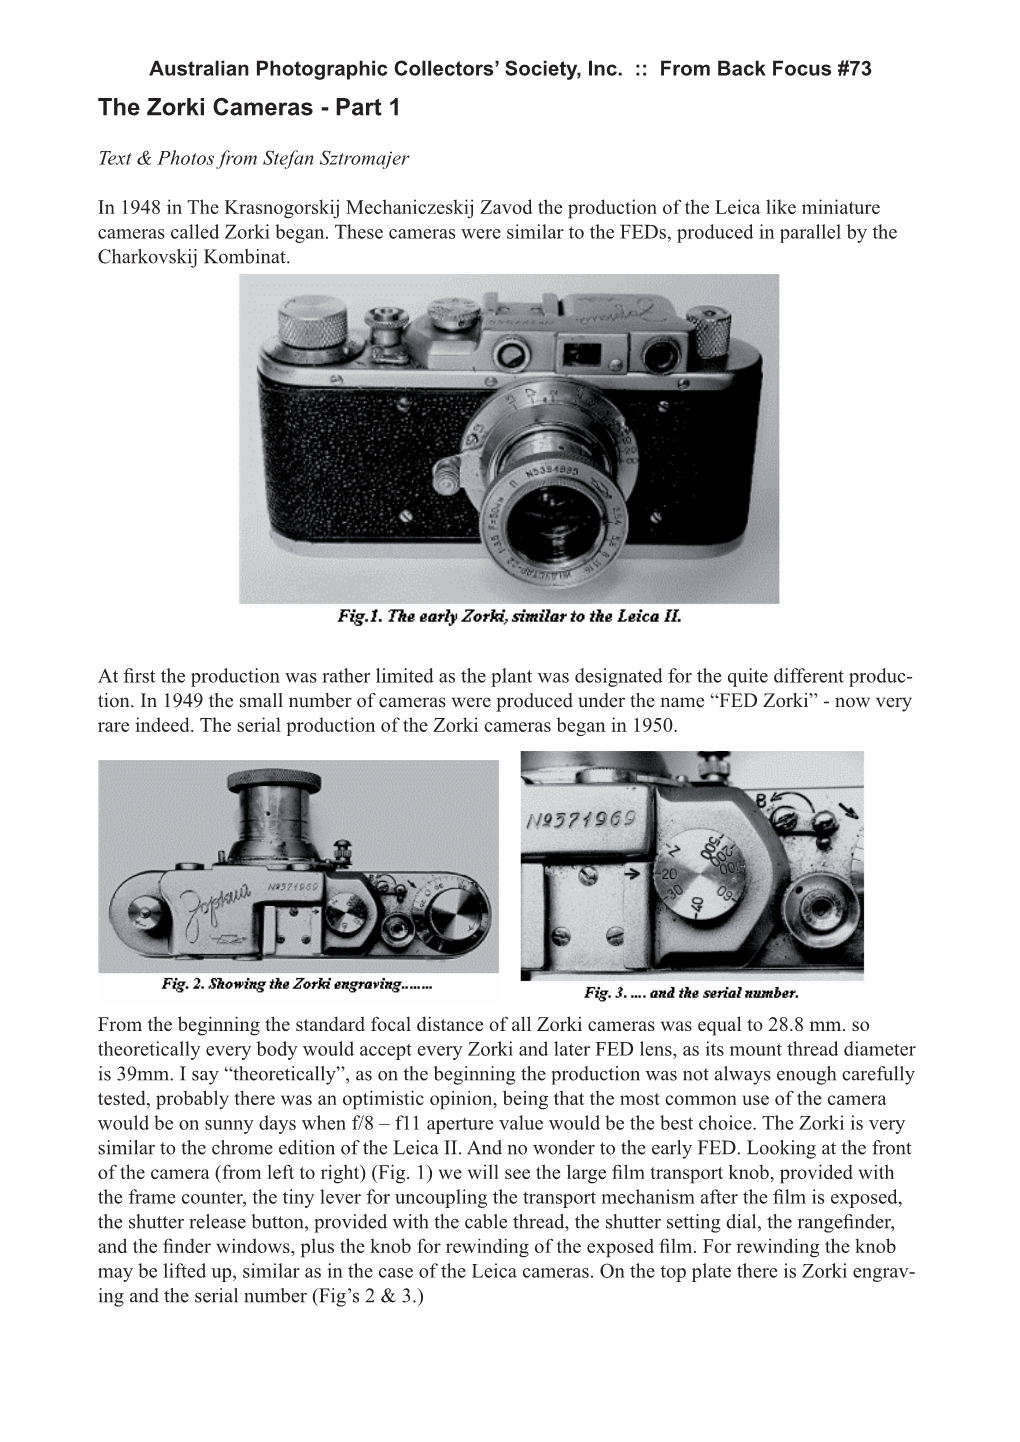 The Zorki Cameras - Part 1